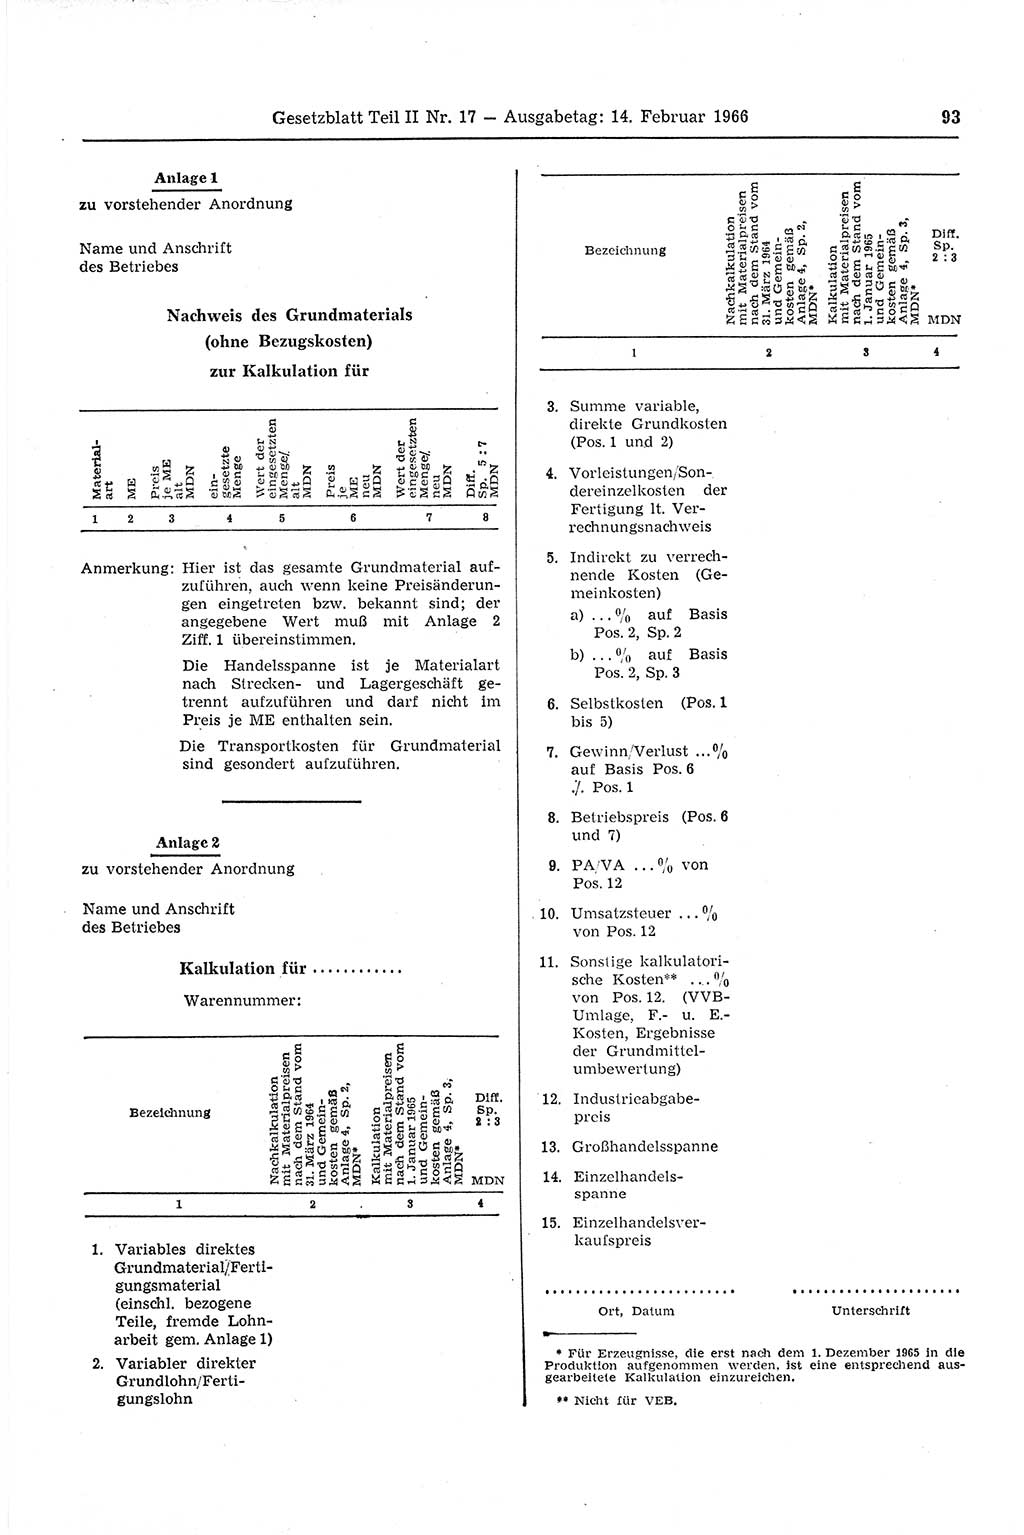 Gesetzblatt (GBl.) der Deutschen Demokratischen Republik (DDR) Teil ⅠⅠ 1966, Seite 93 (GBl. DDR ⅠⅠ 1966, S. 93)